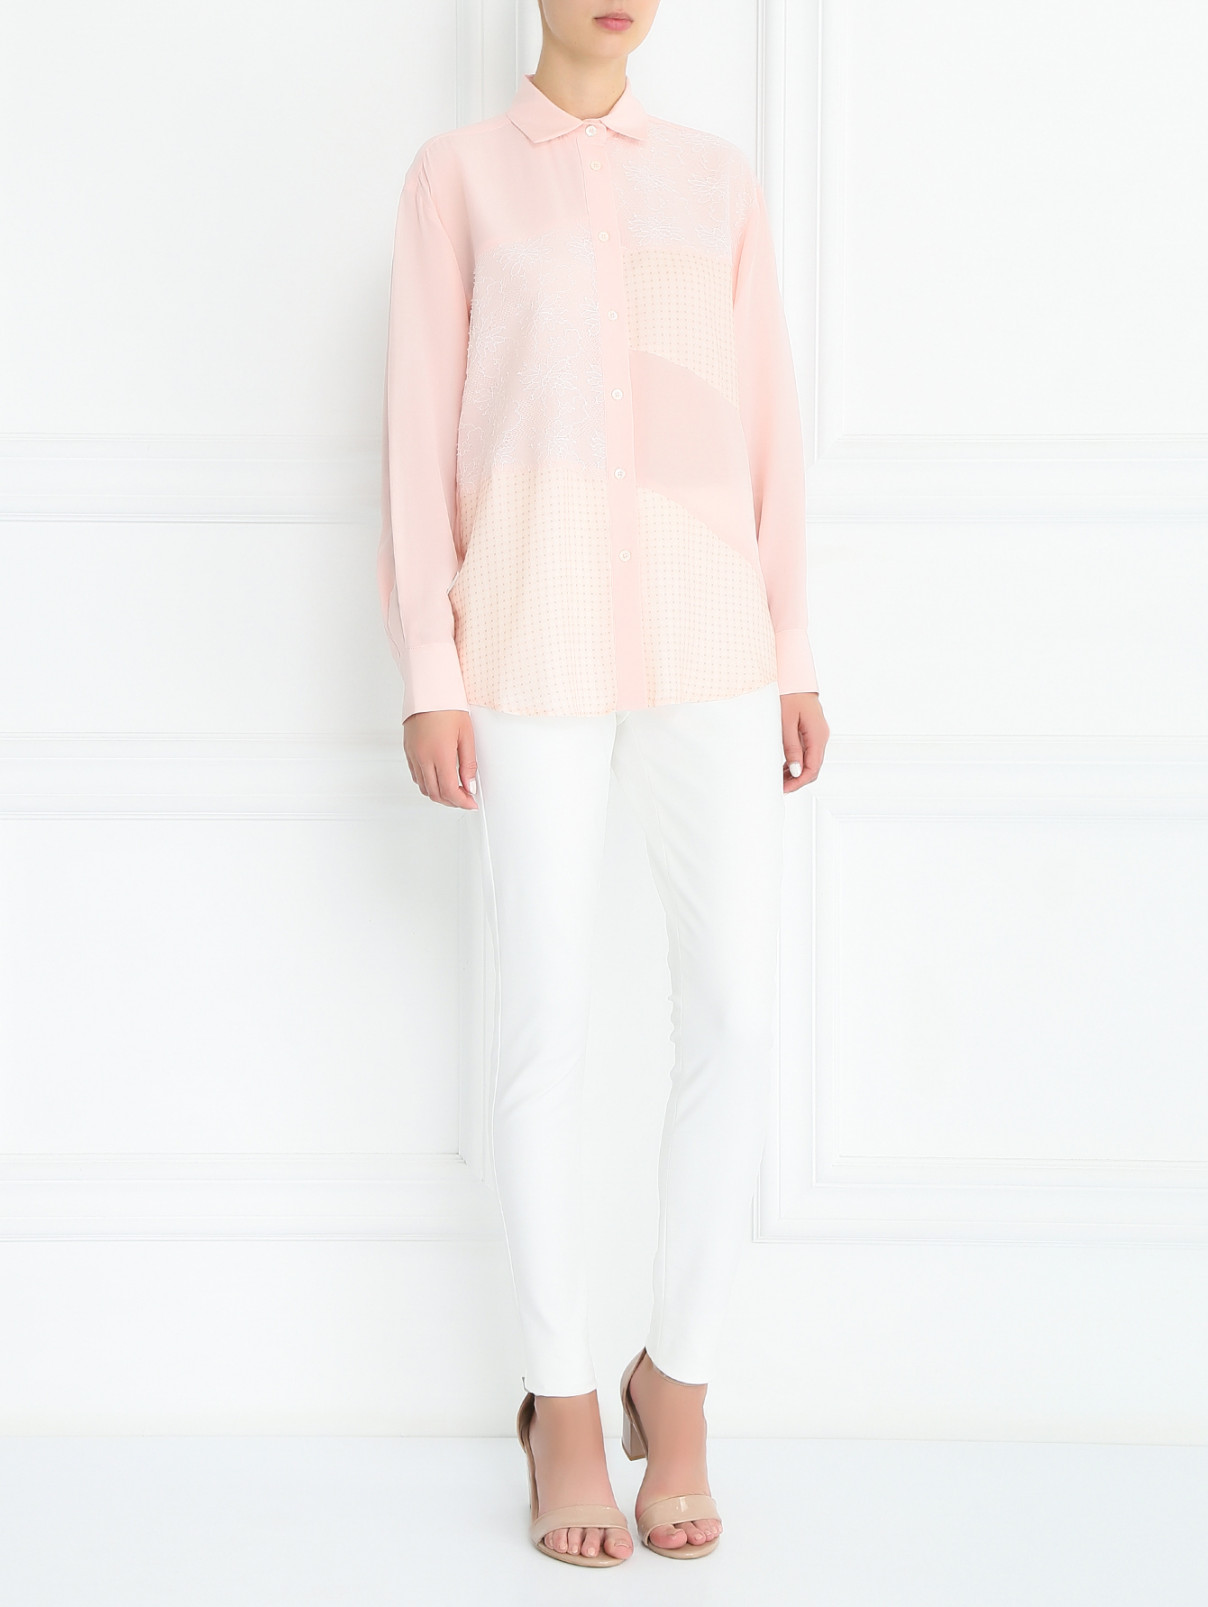 Блуза из шелка с узором и кружевом Paul&Joe  –  Модель Общий вид  – Цвет:  Розовый